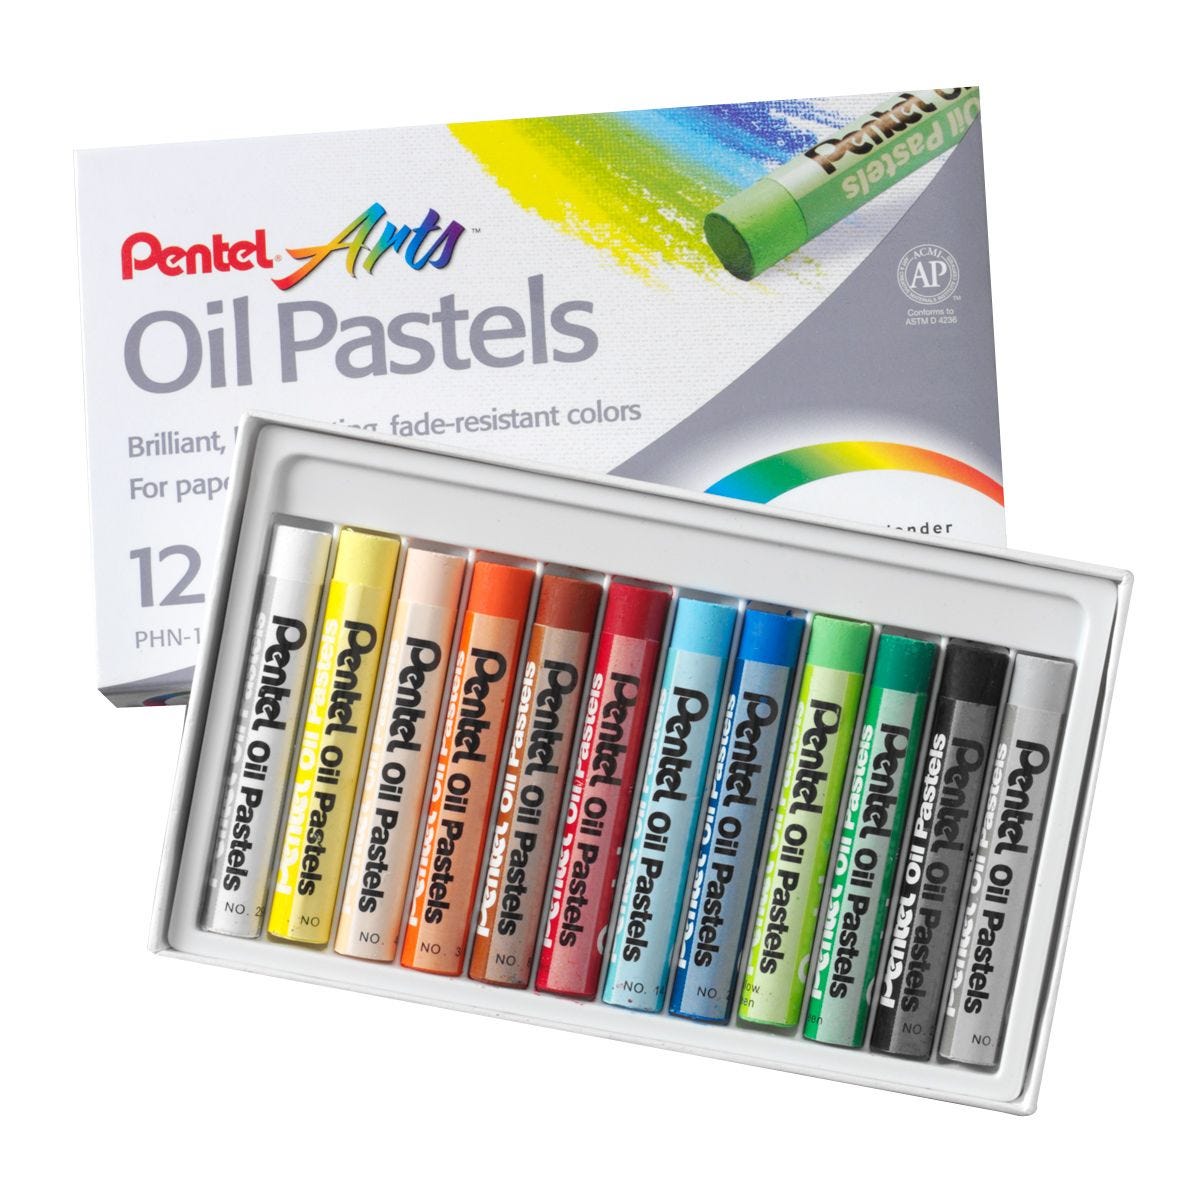 Pentel Arts Oil Pastels - Shop Paint & Paint Brushes at H-E-B